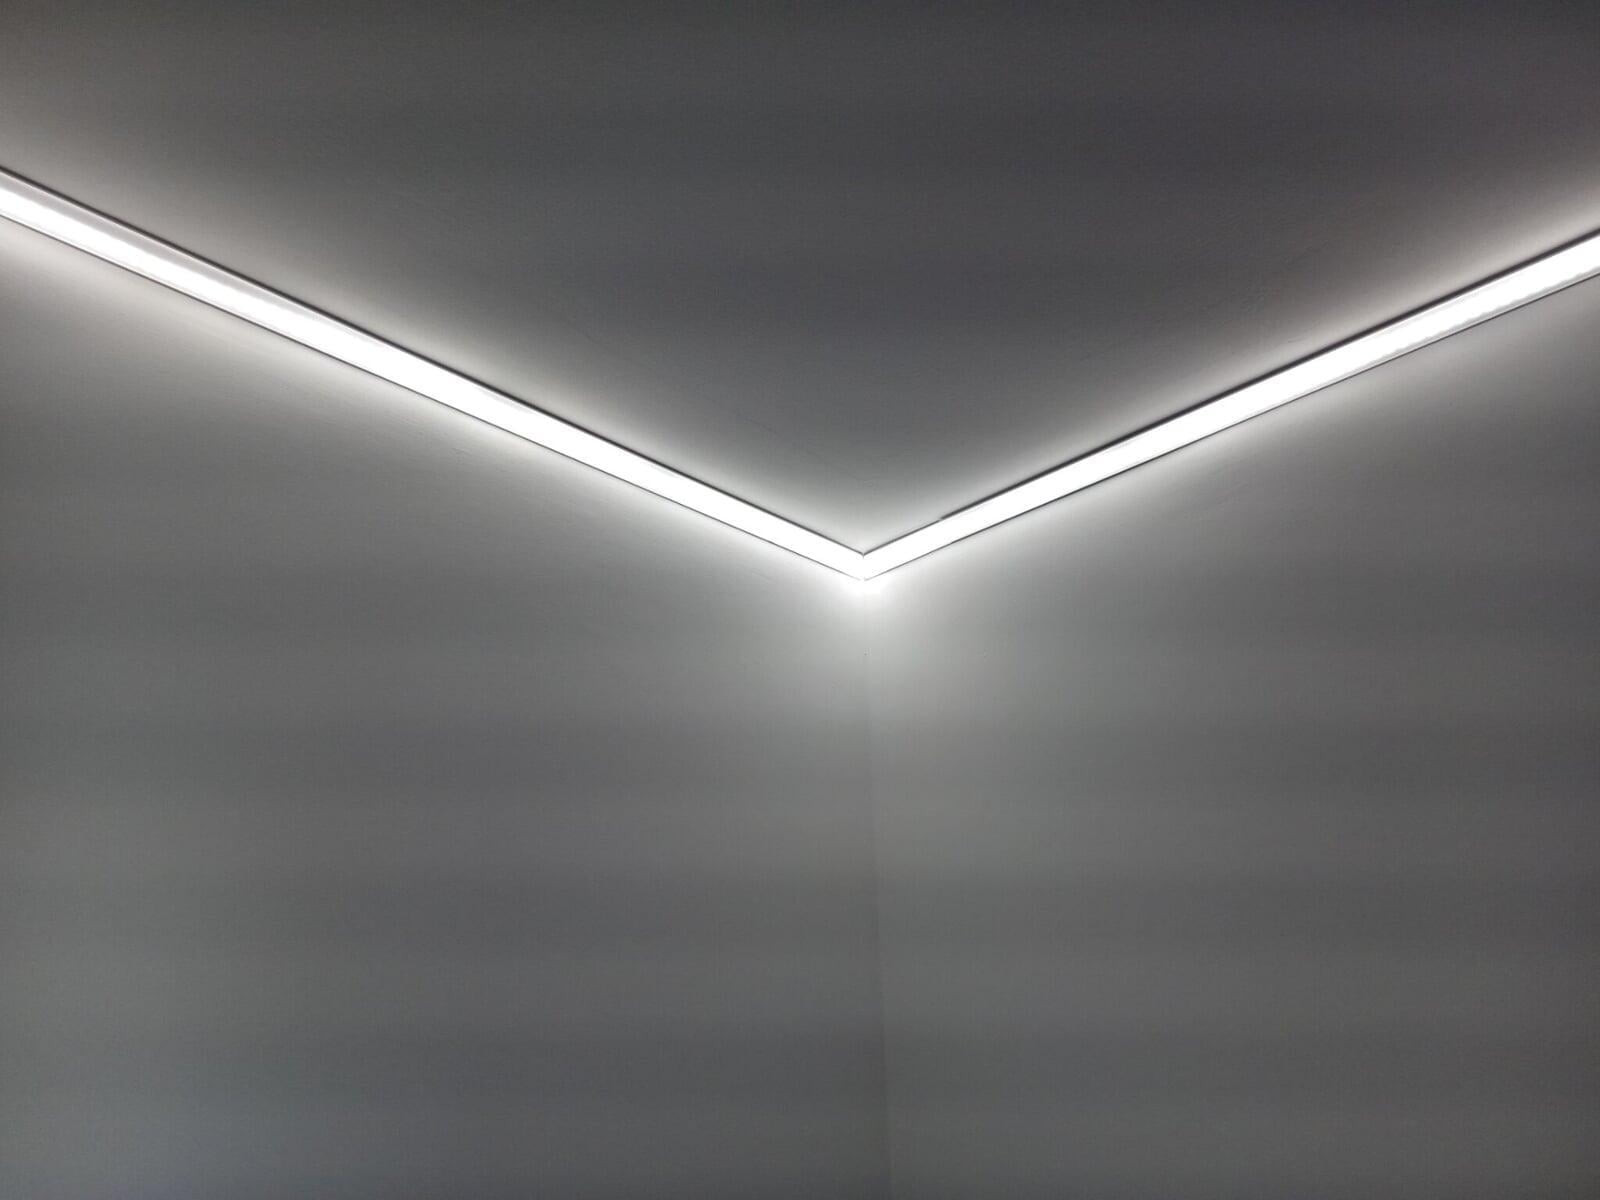 LED pour chambre : Meilleurs rubans LED Plafond pour un éclairage